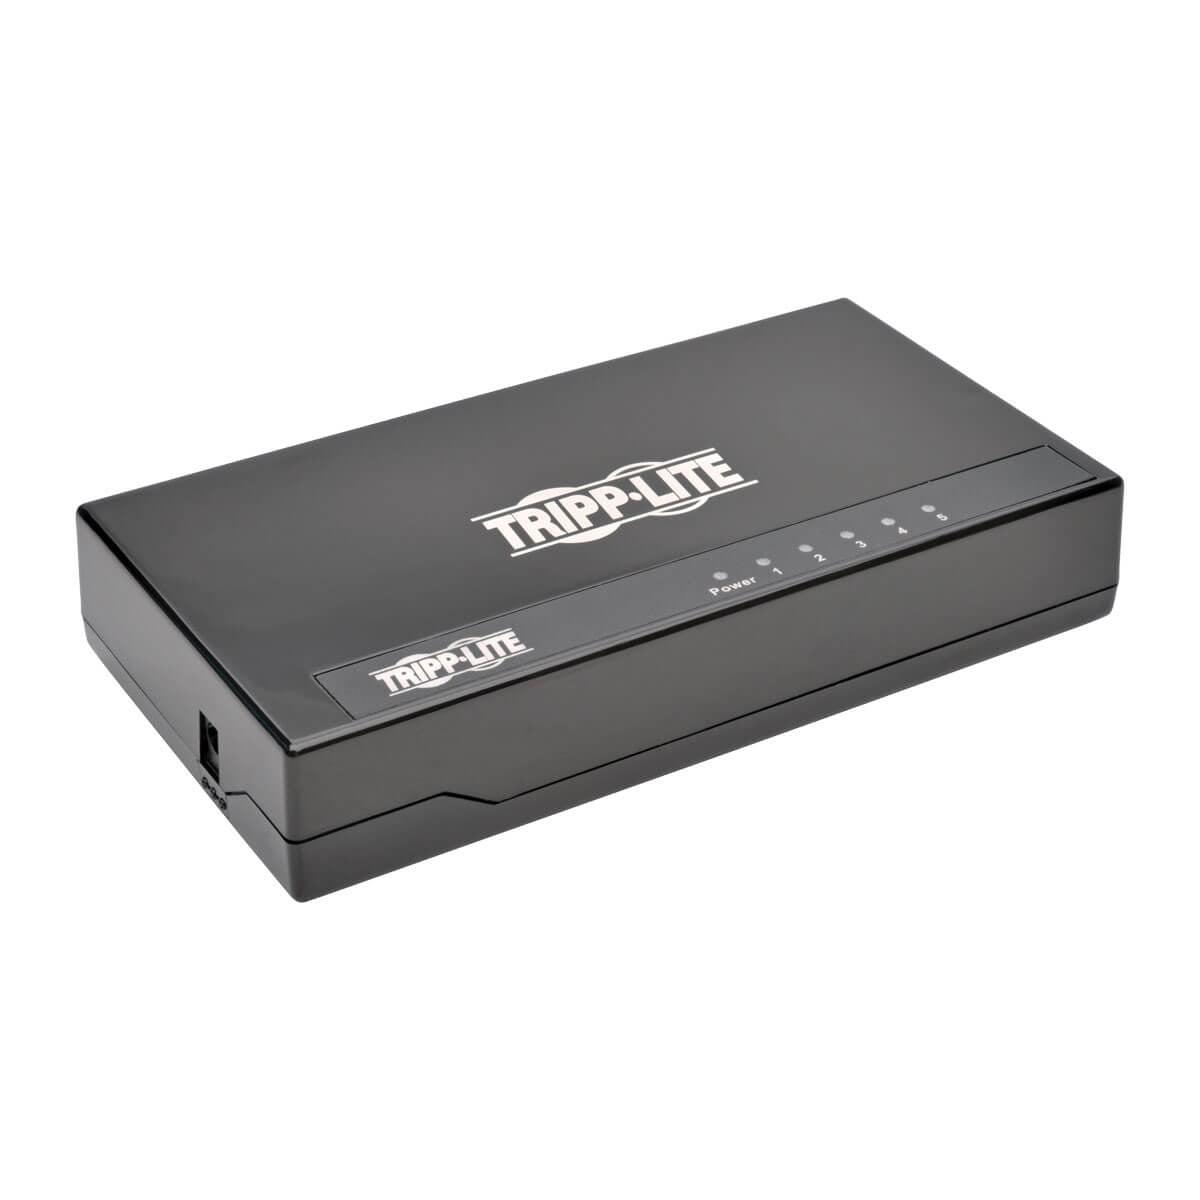 Tripp Lite 5-Port 10/100/1000 Mbps Desktop Gigabit Ethernet Unmanaged Switch